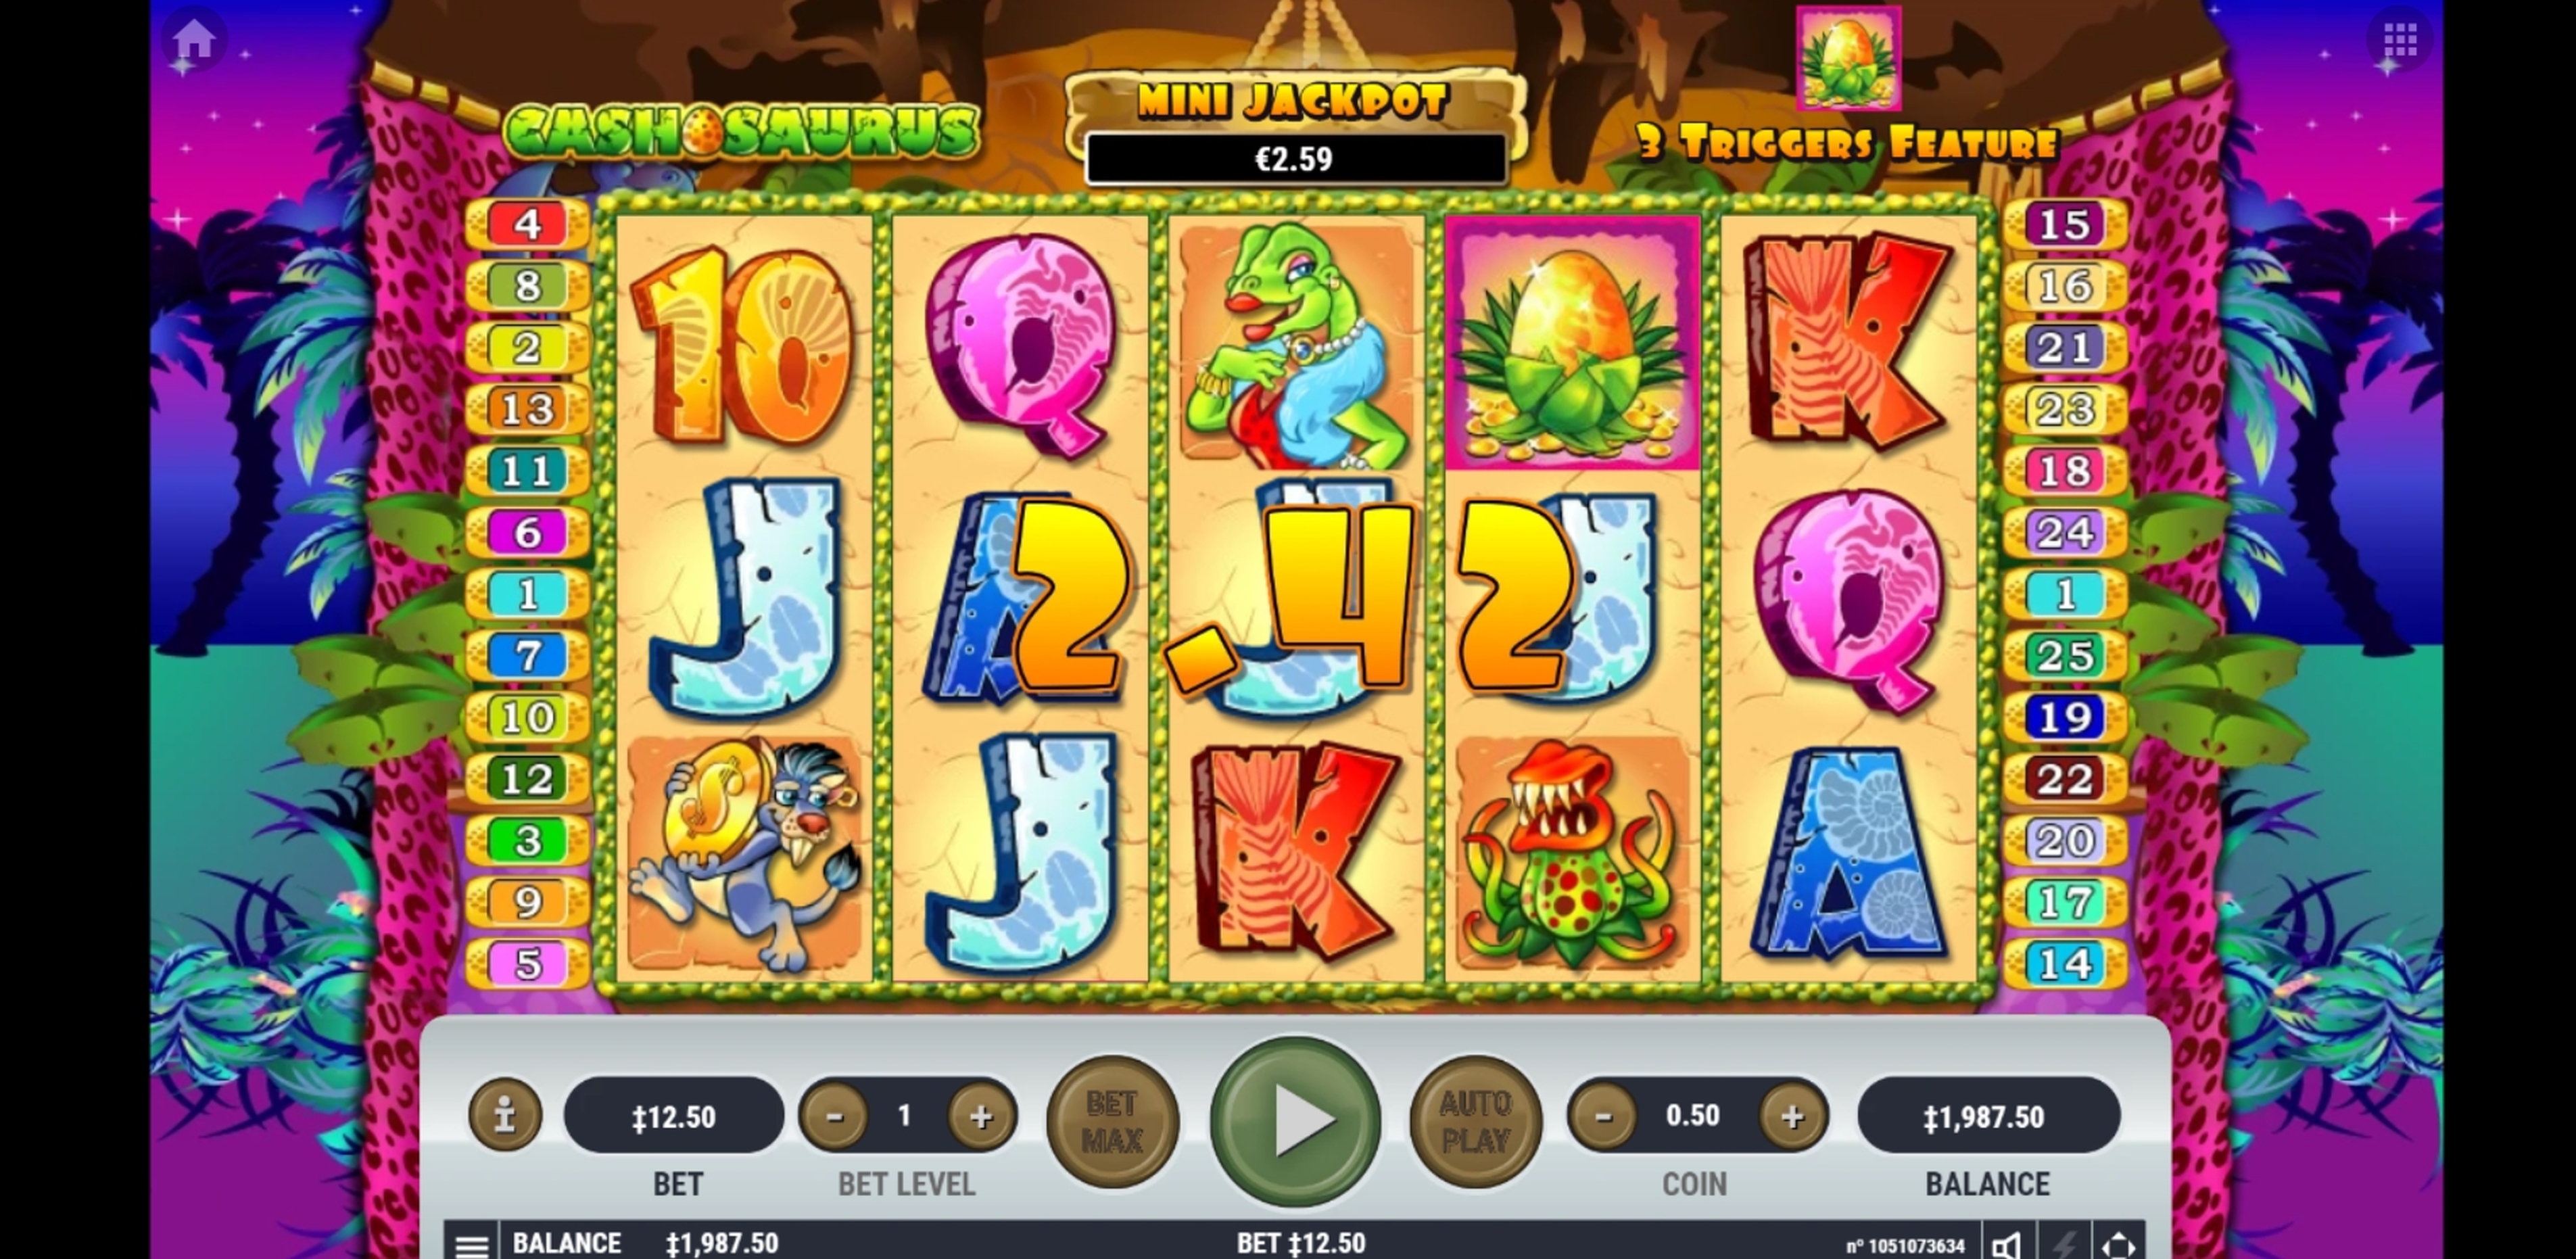 Win Money in Cashosaurus Free Slot Game by Habanero